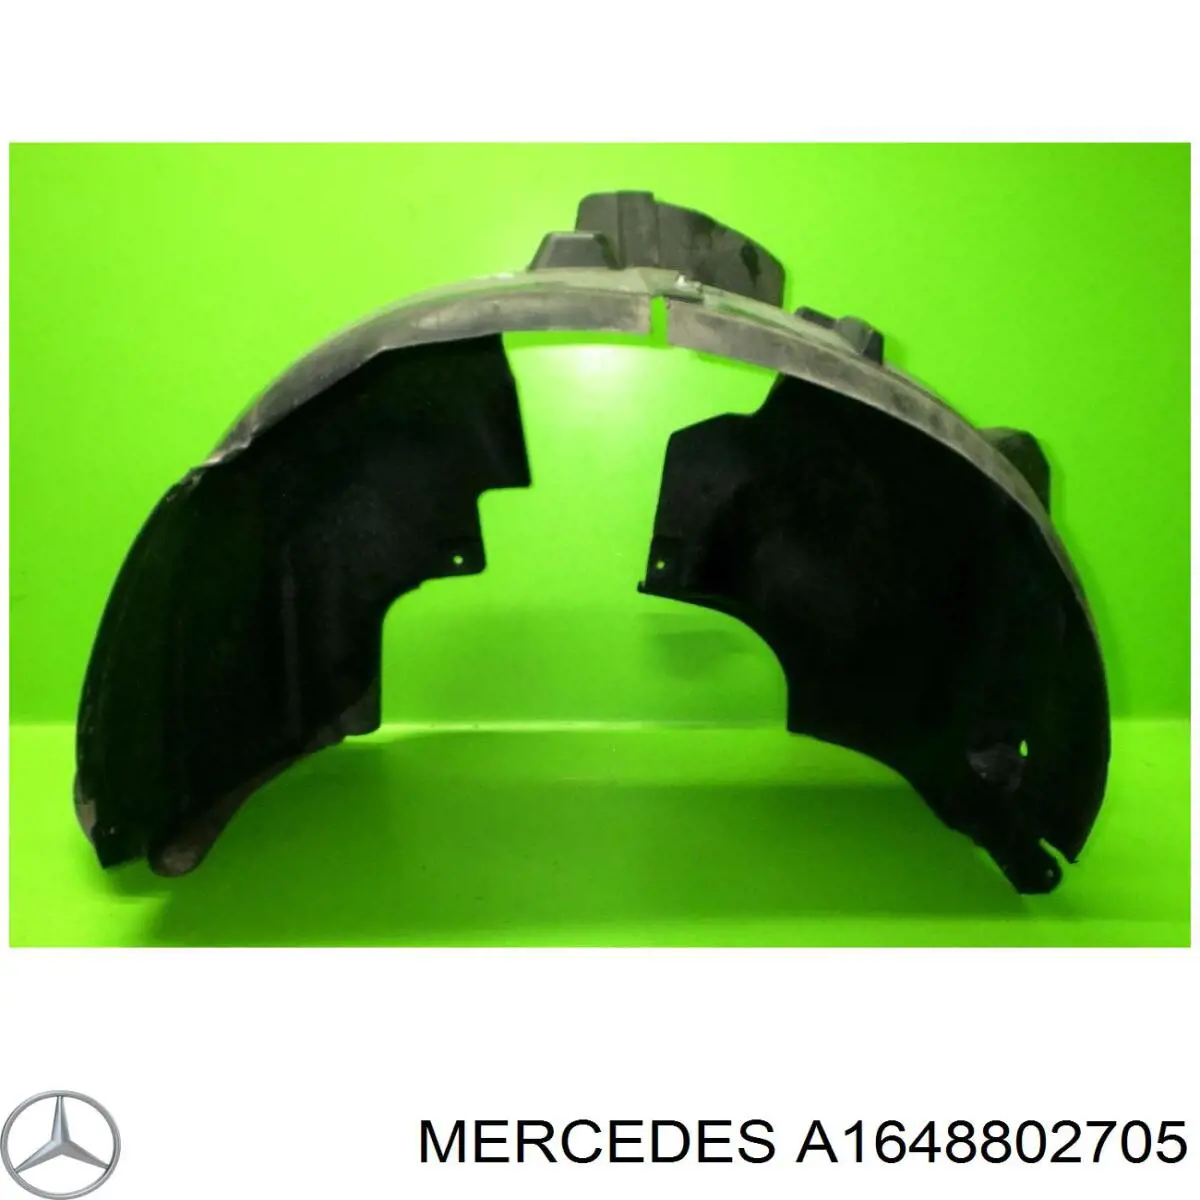 A1648802705 Mercedes guardabarros interior, aleta delantera, izquierdo delantero